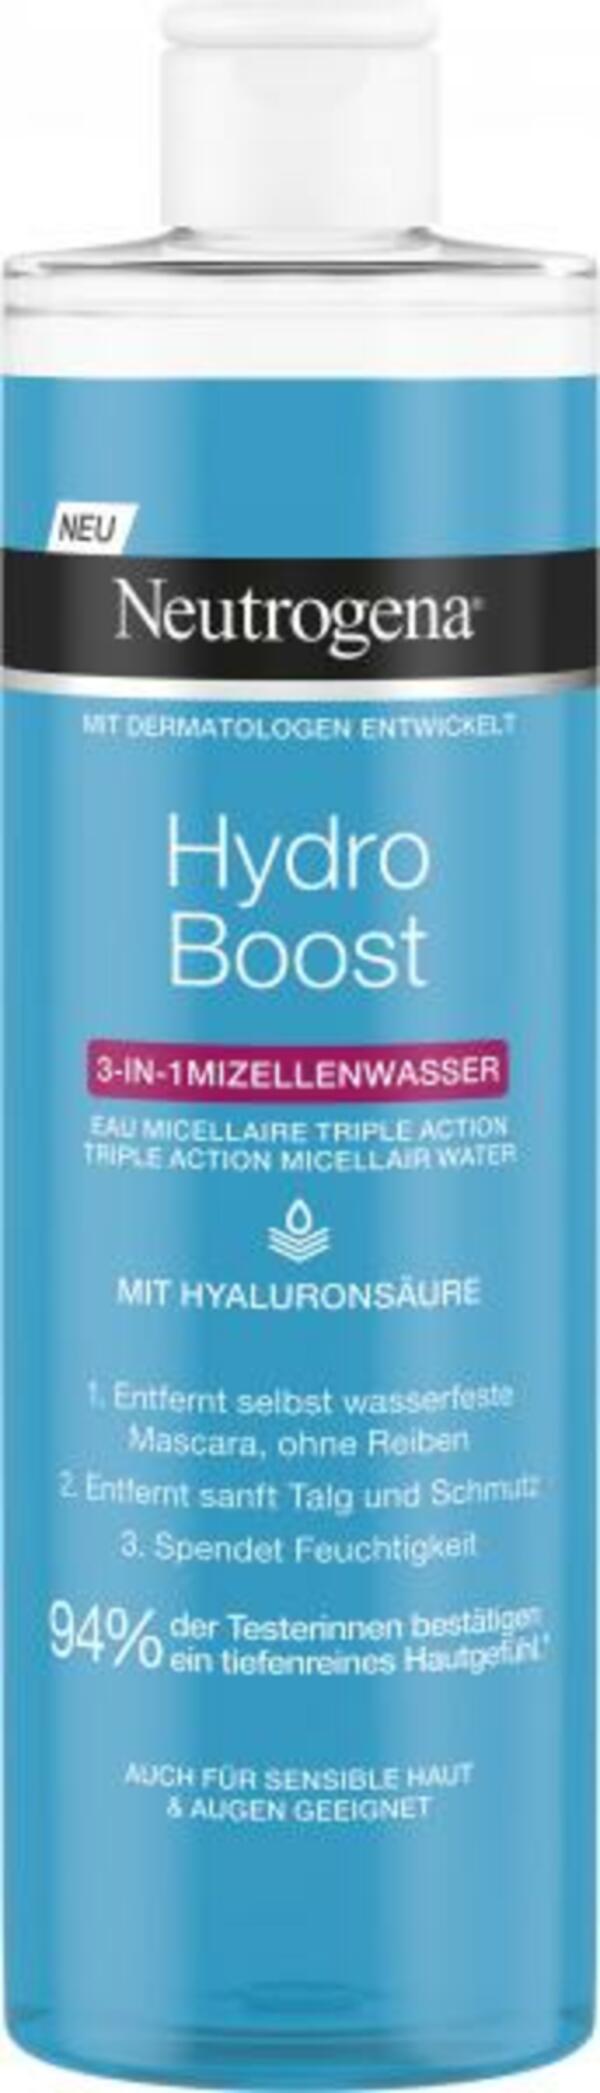 Bild 1 von Neutrogena Hydro Boost 3in1 Mizellenwasser